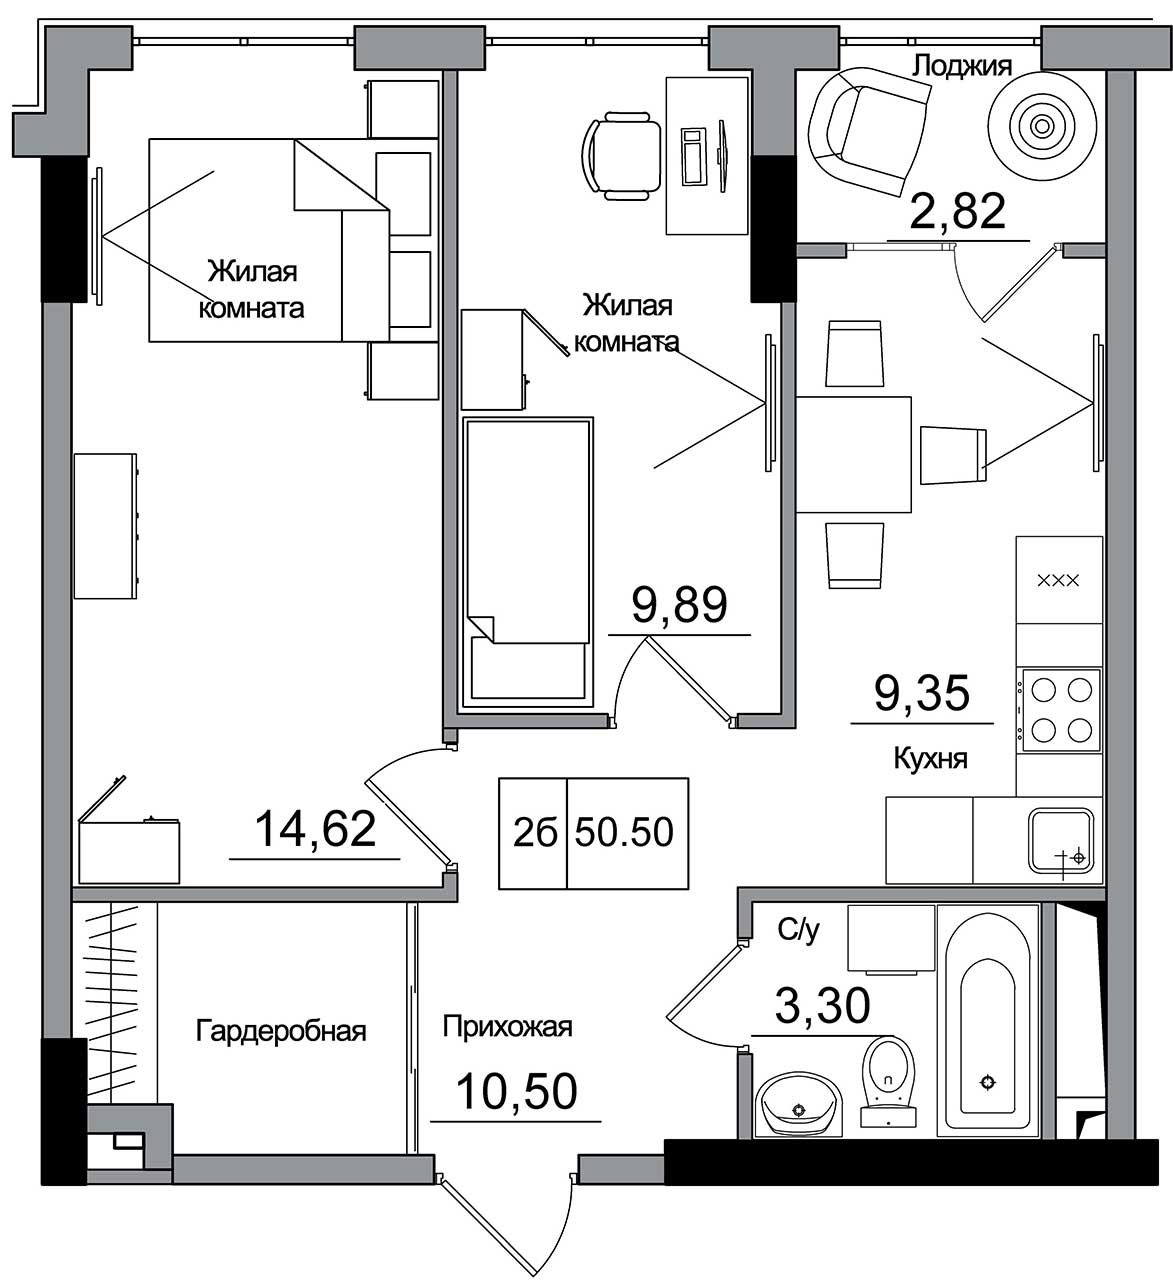 Планировка 2-к квартира площей 50.5м2, AB-16-12/00007.